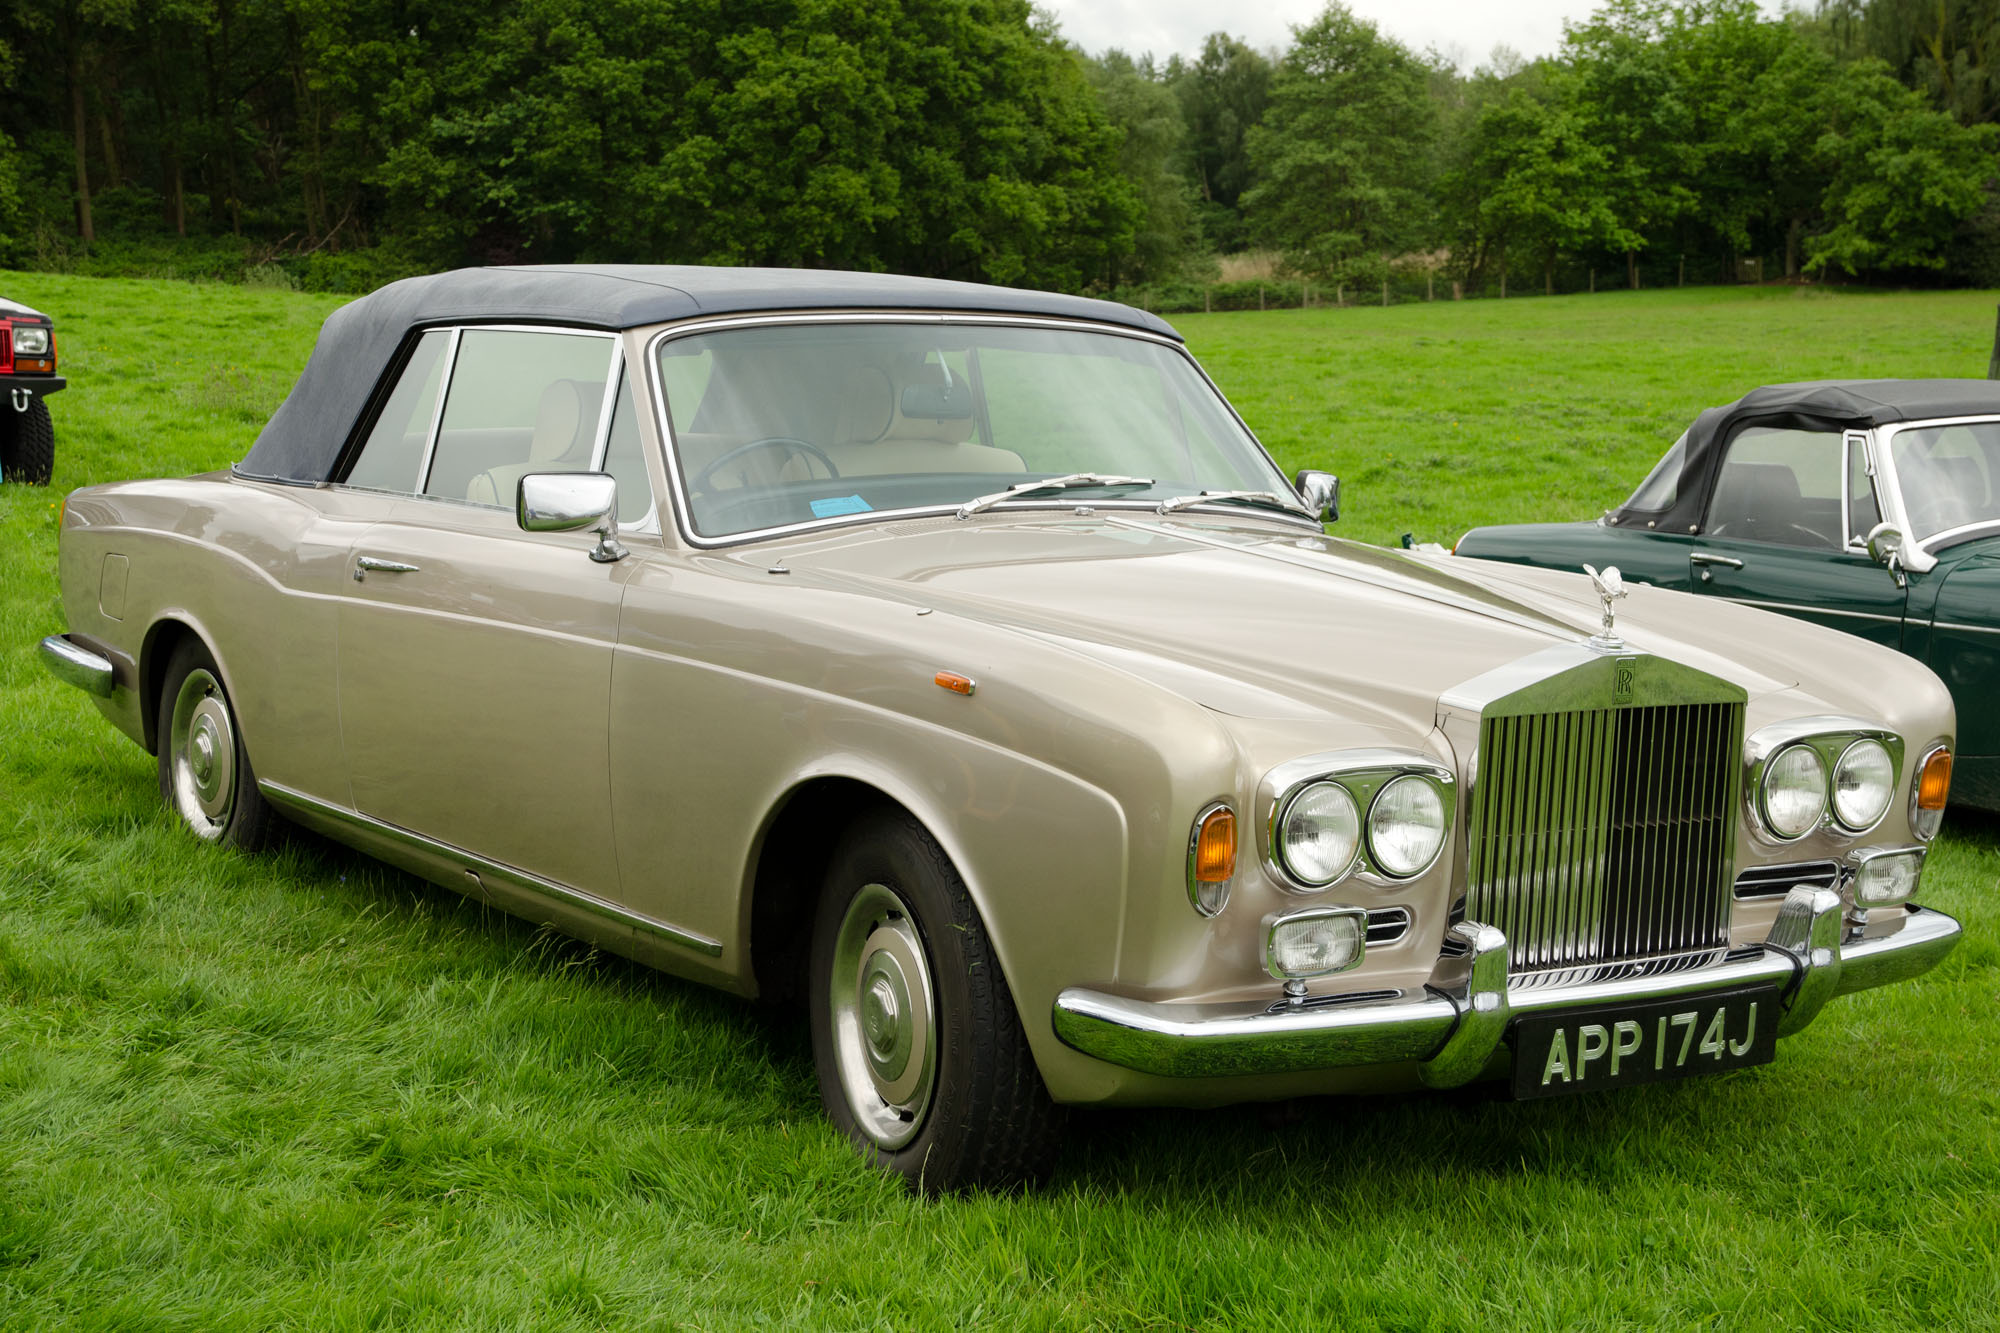 File:Rolls Royce Corniche (1970) - 14619690073.jpg - Wikimedia Commons